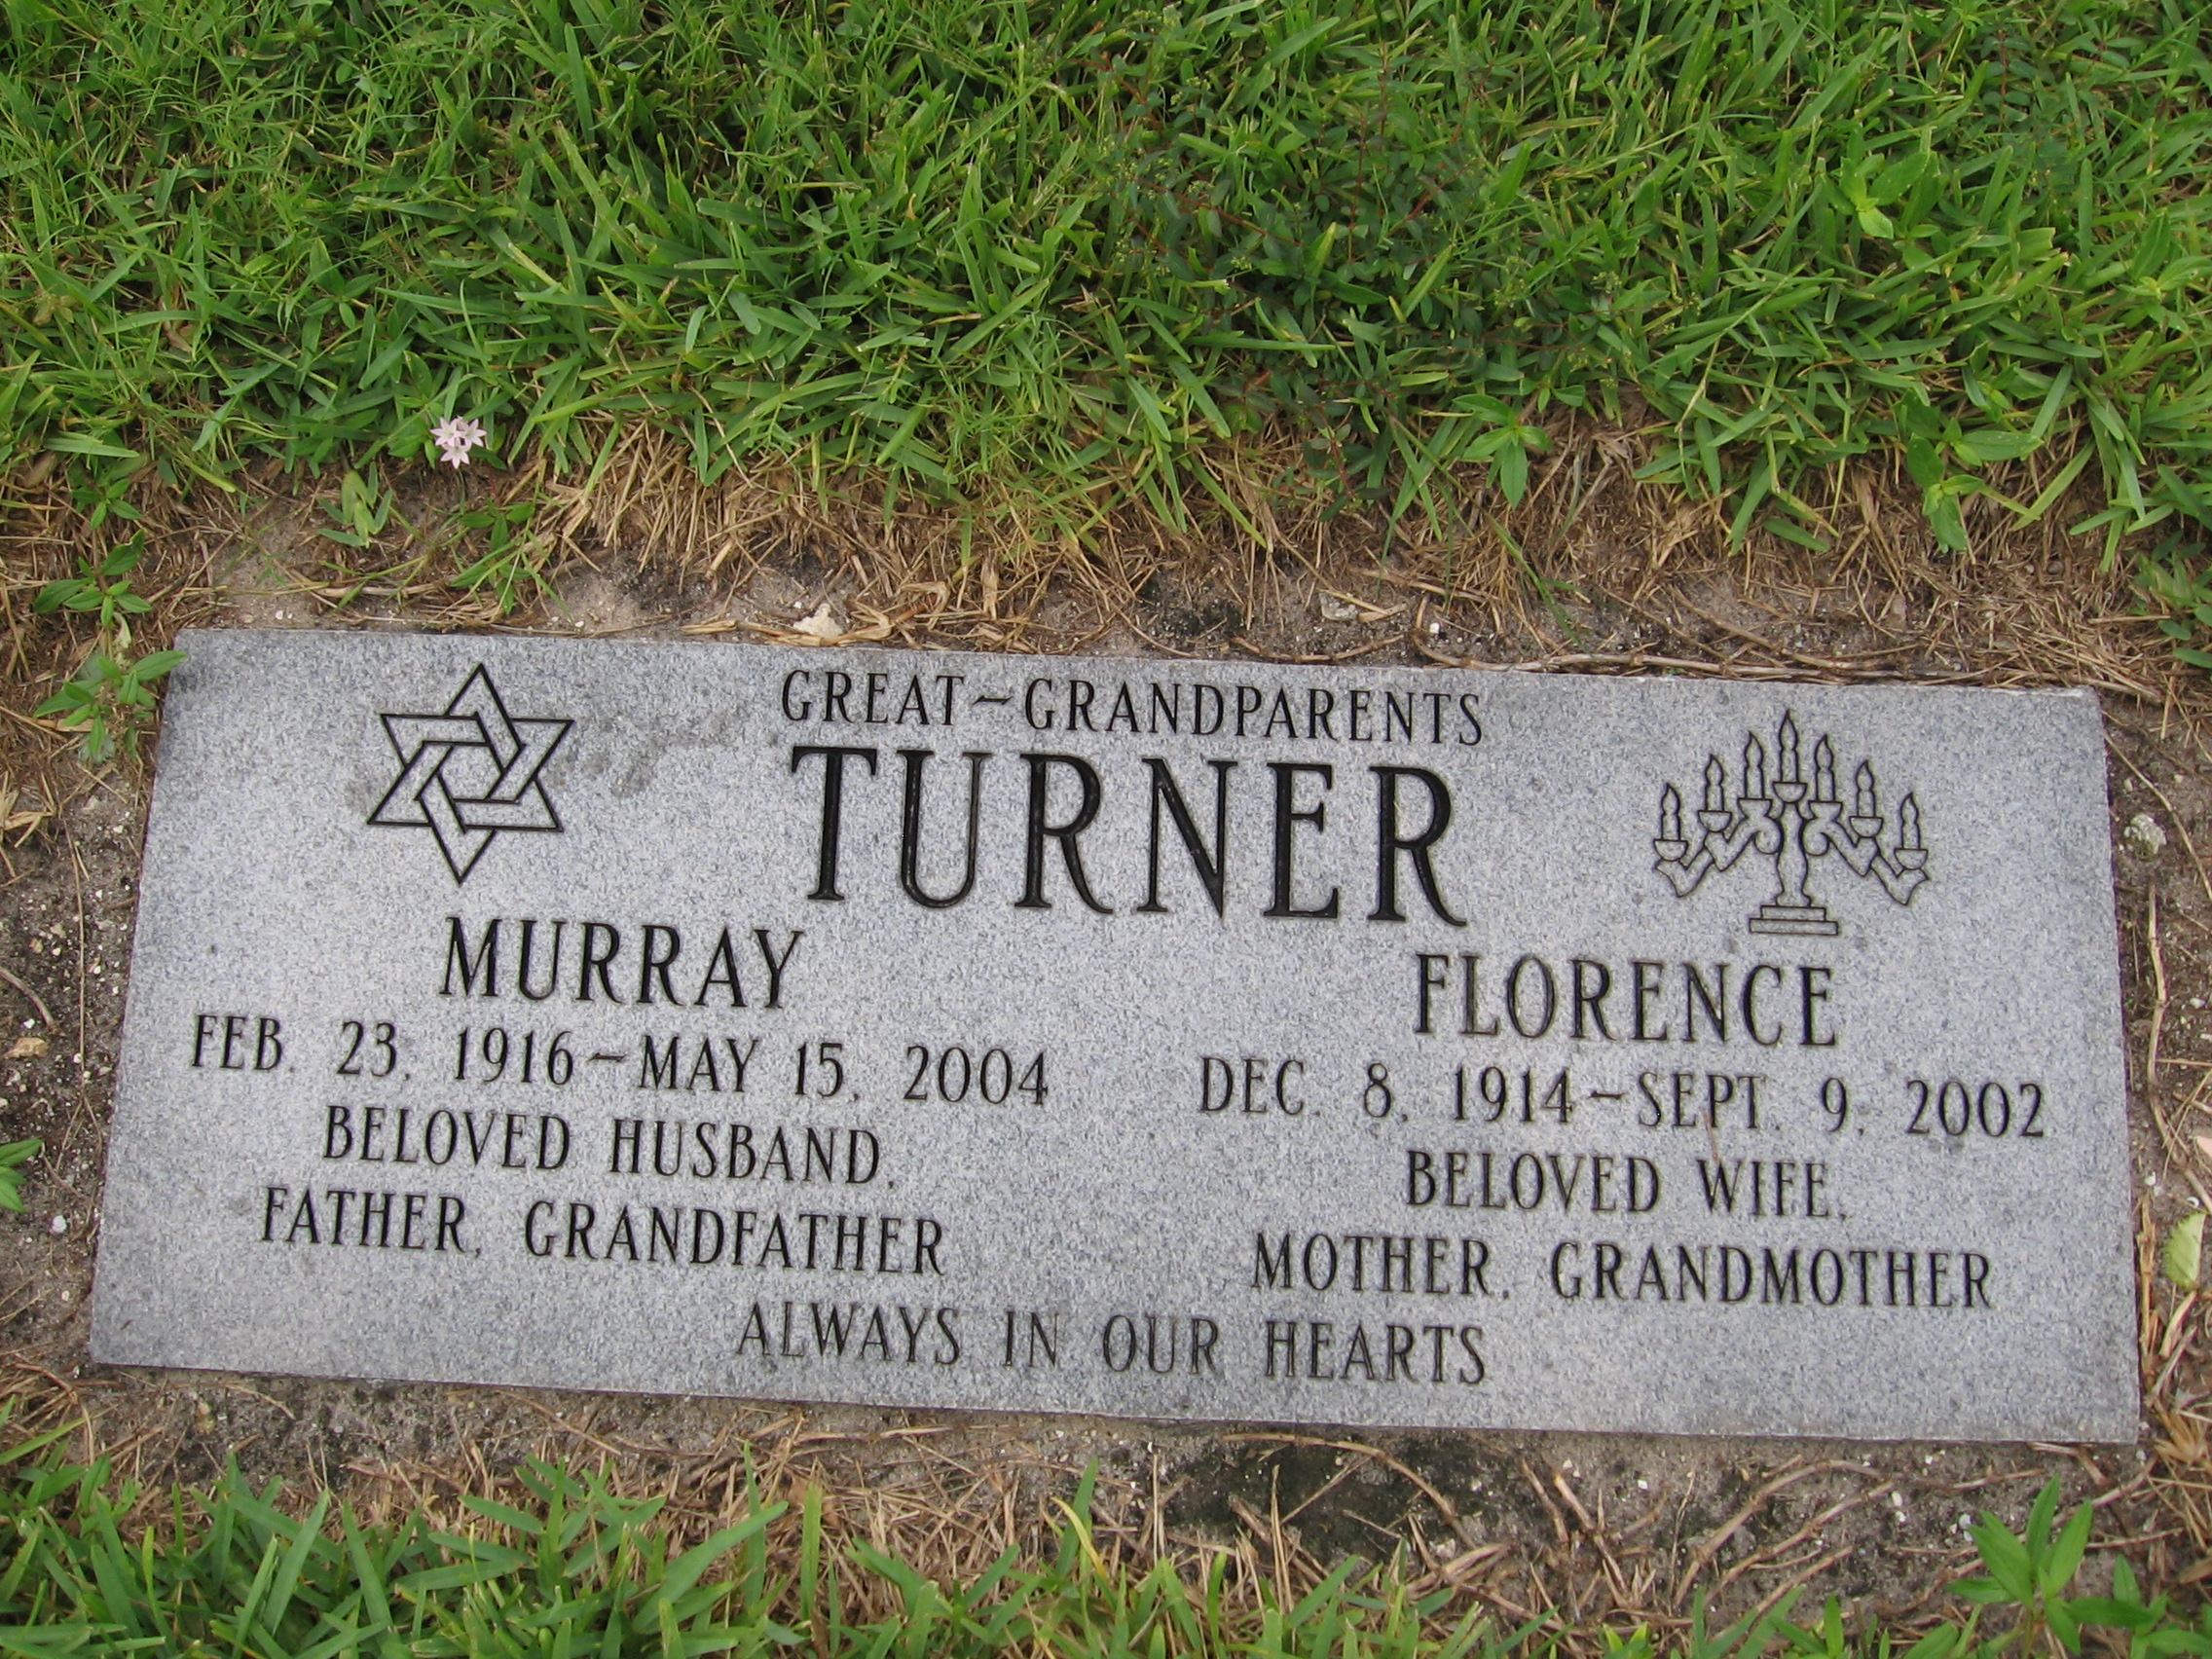 Murray Turner